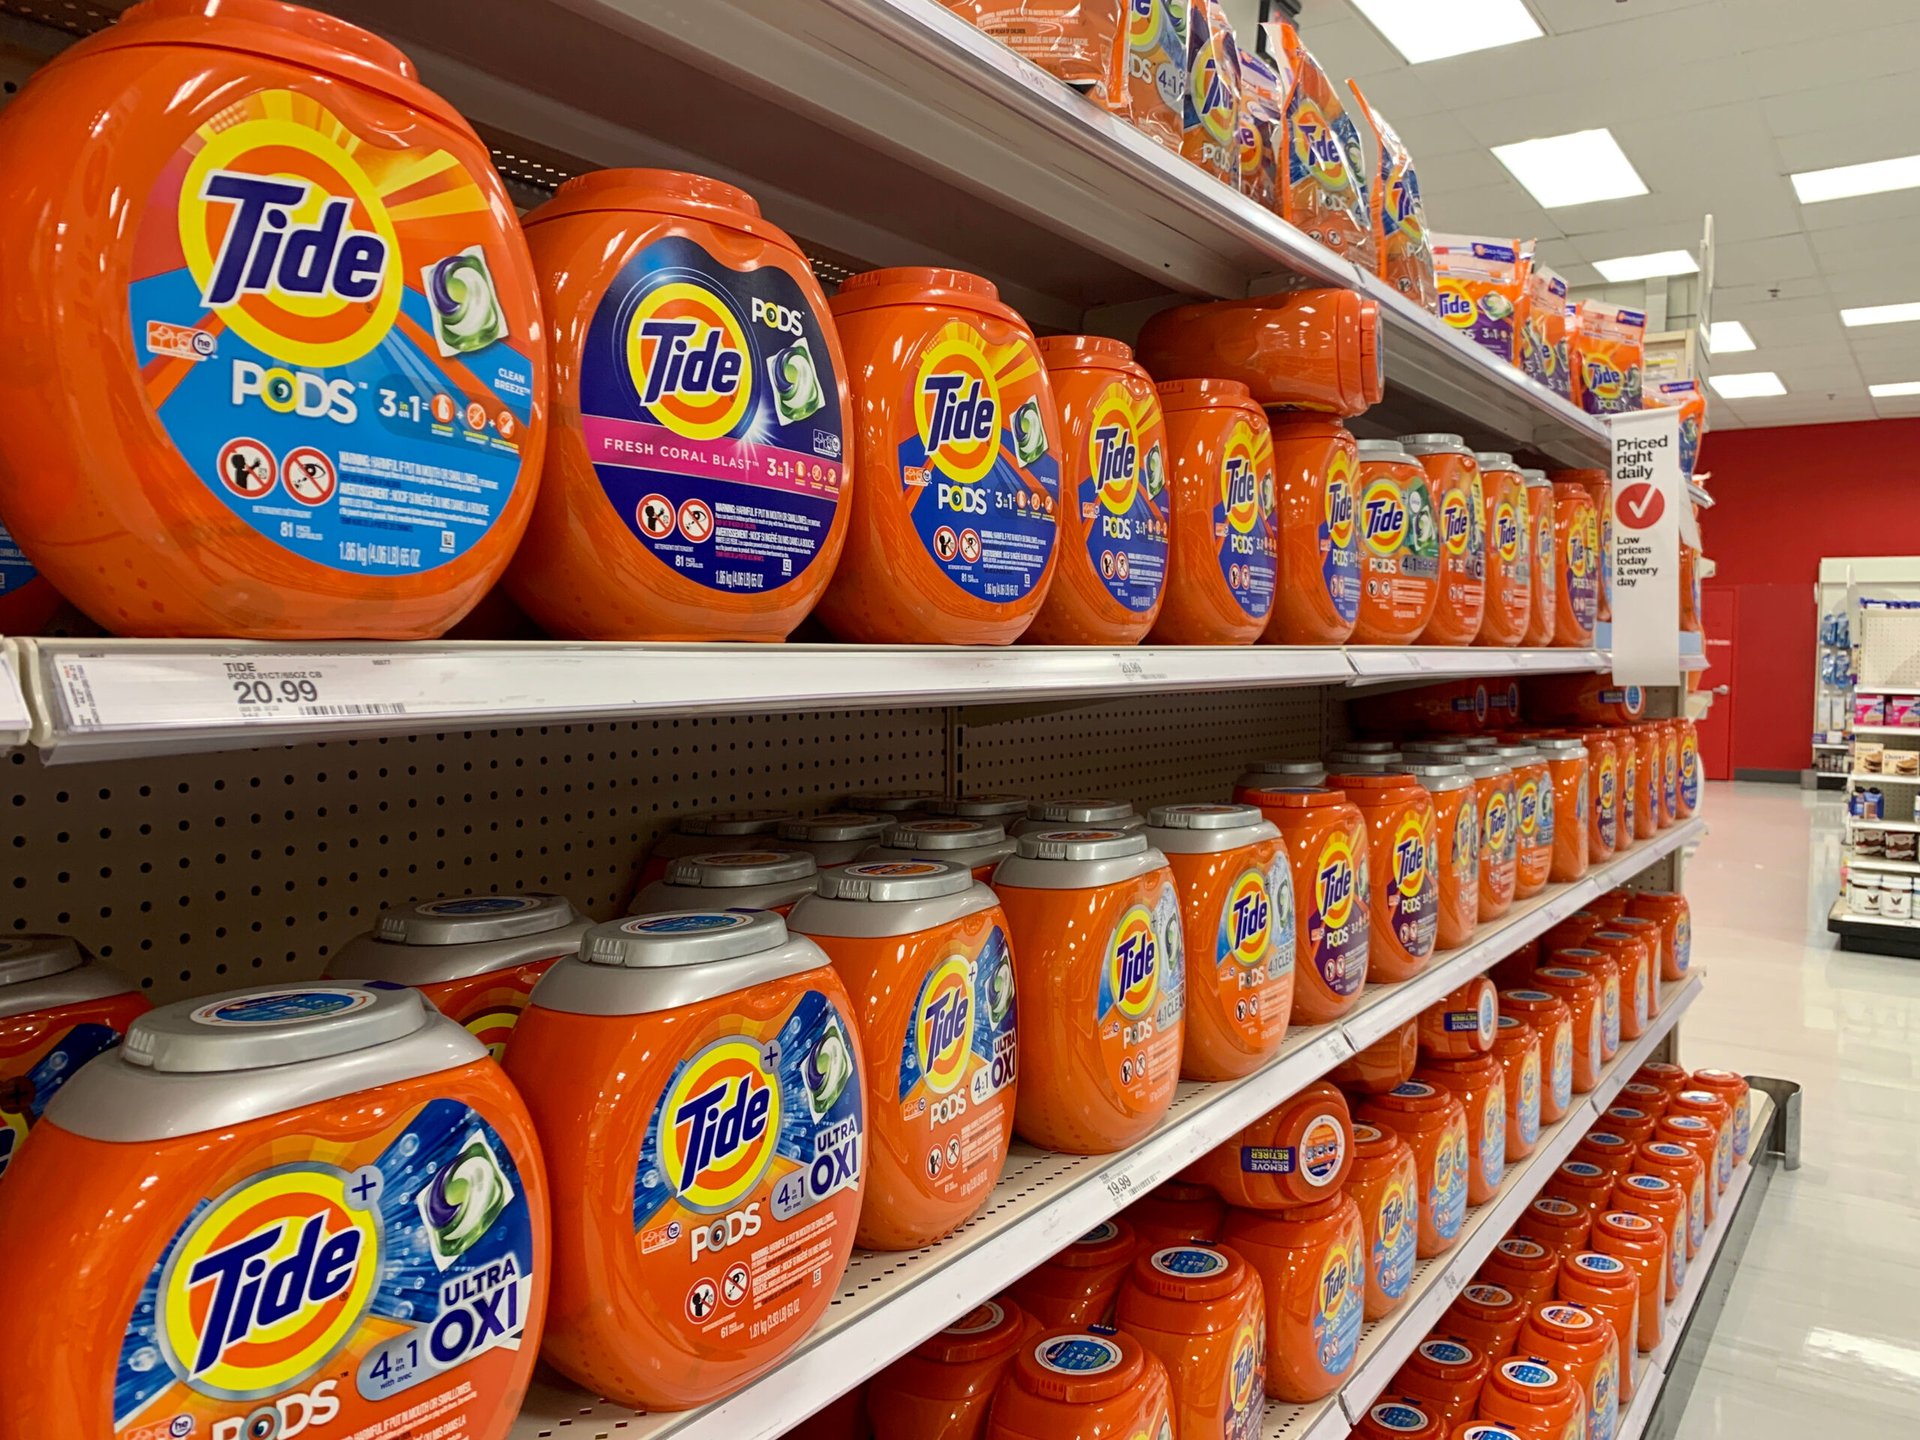 Tide laundry detergent on store shelves